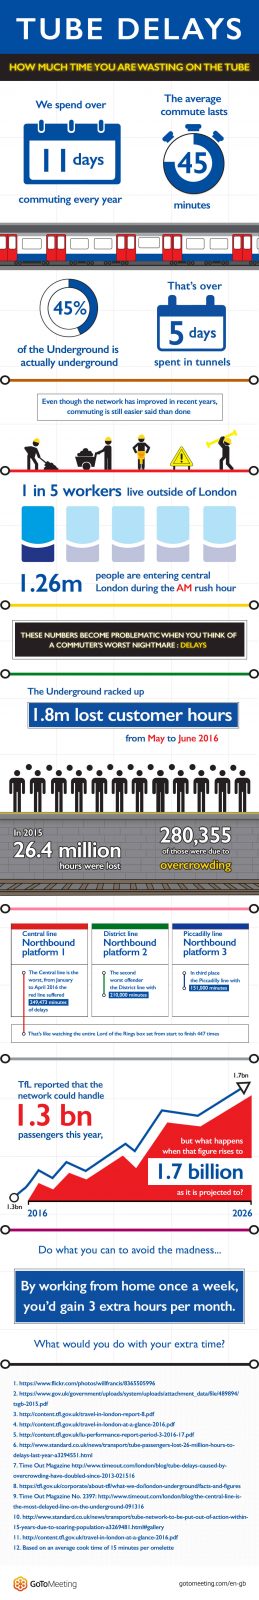 Citrix tube delays - Infographic